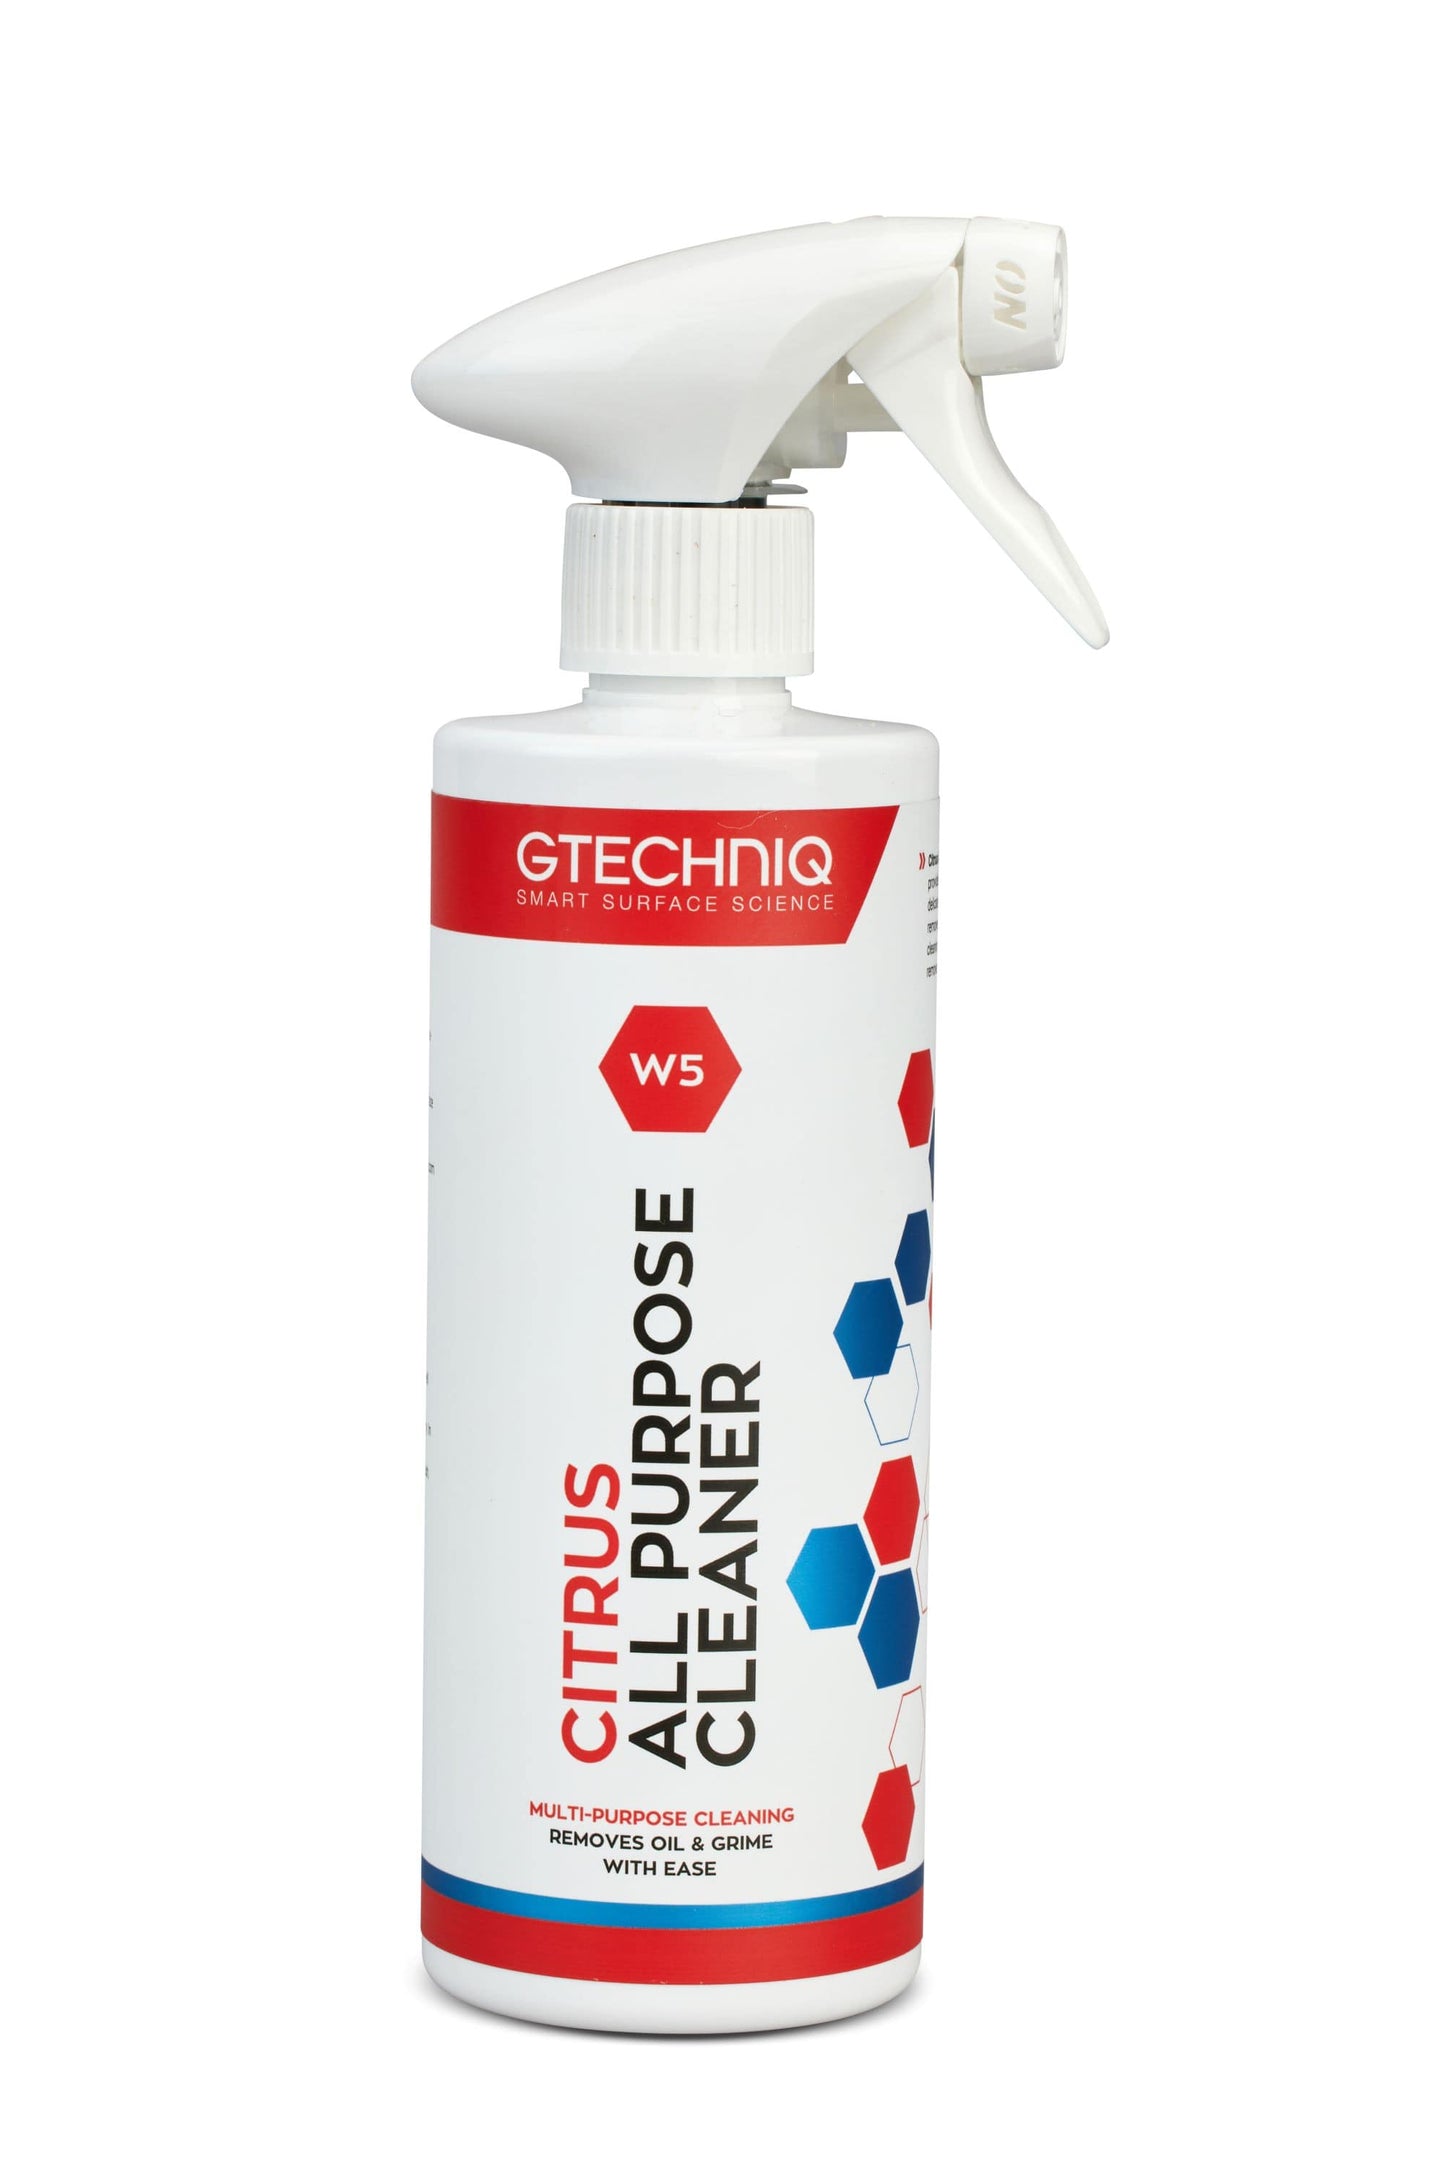 Gtechniq W5 Citrus All-Purpose Cleaner - 500 ml